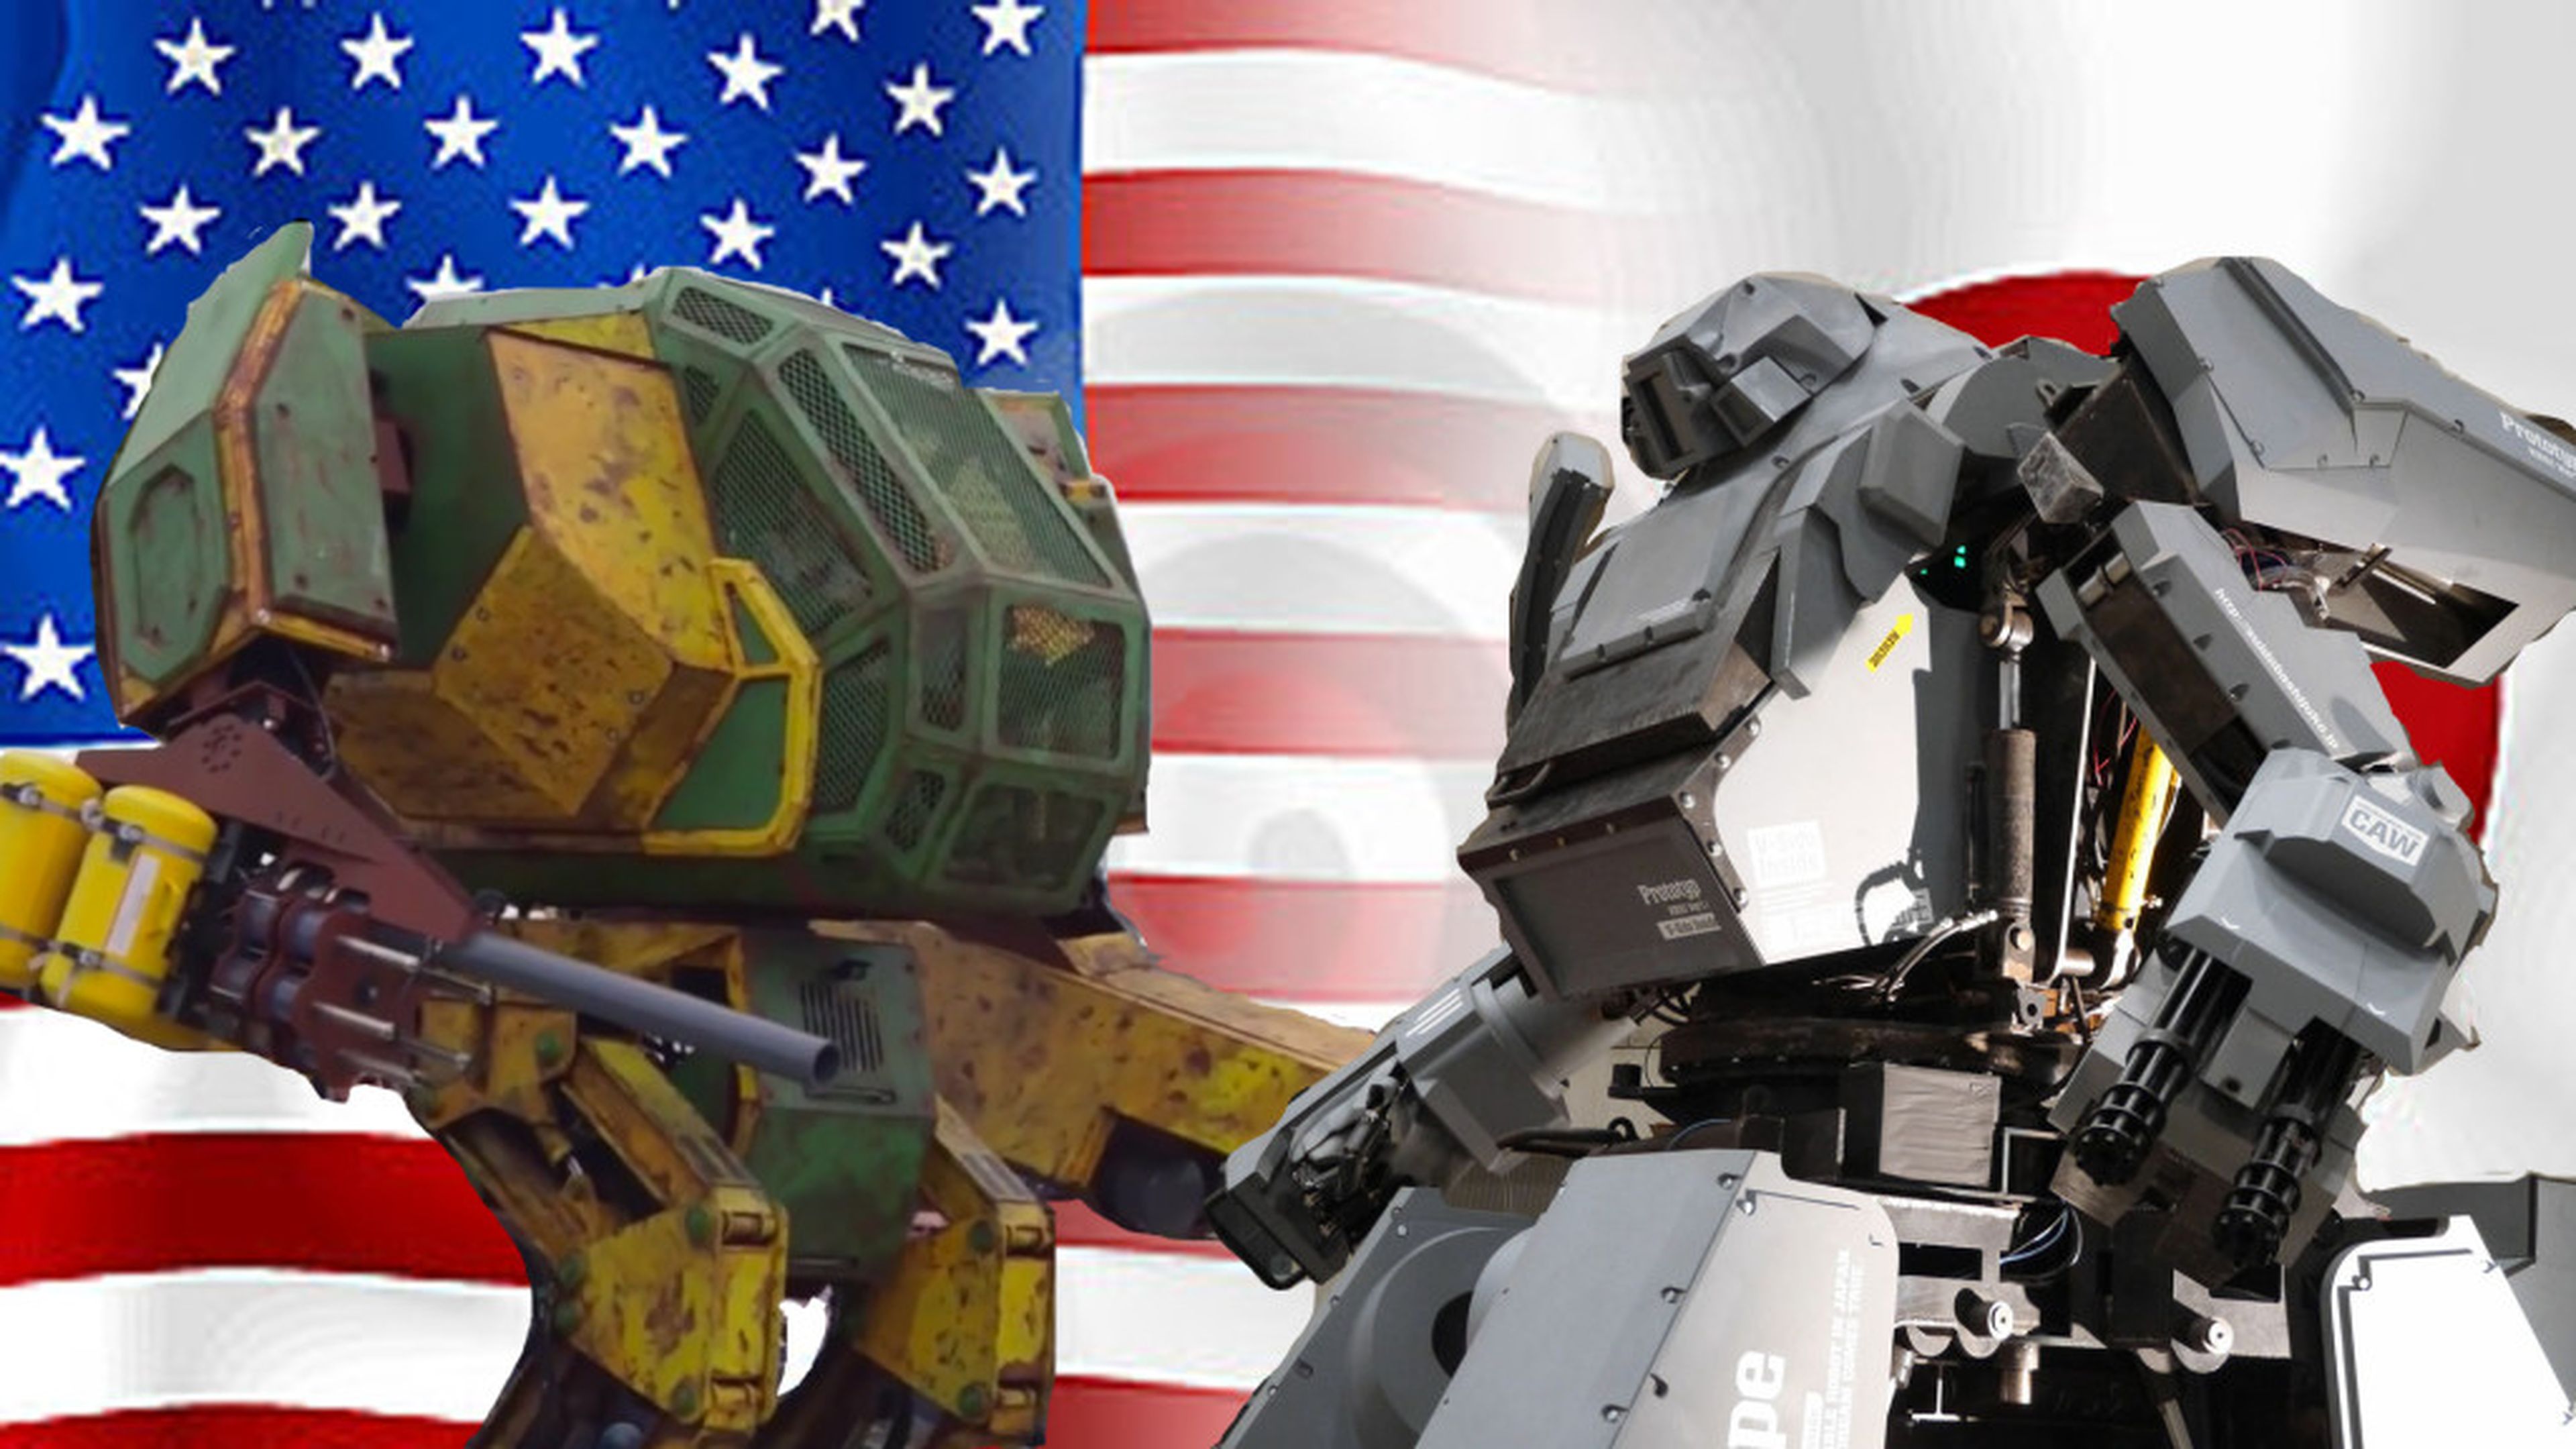 EEUU vs Japon robots gigantes